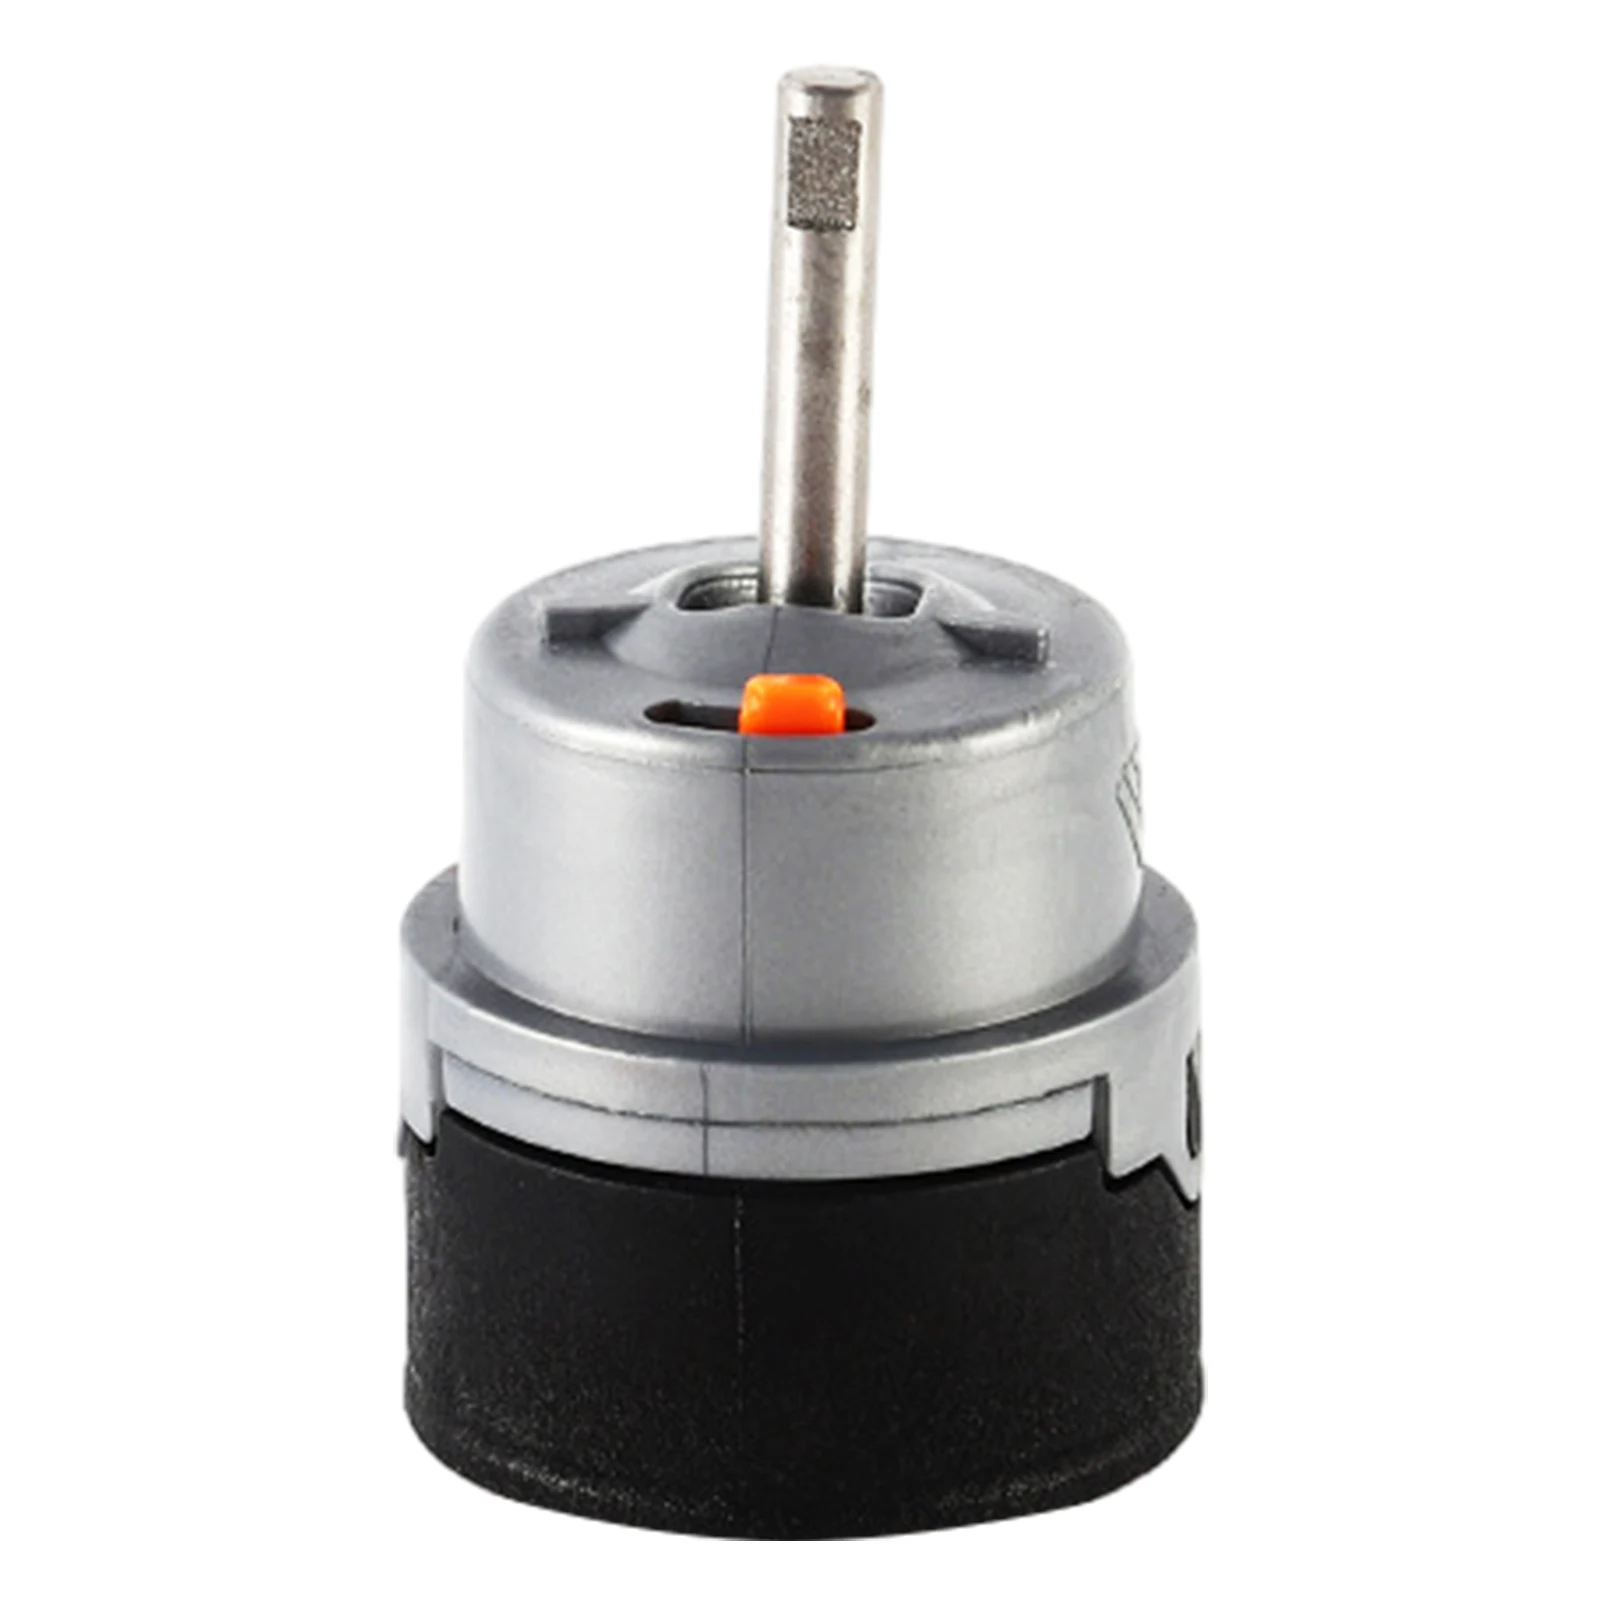 

RP50587 простой в установке ограничитель для кухонного душа Одиночная ручка унитазы износостойкий прочный клапан для ремонта смесителя